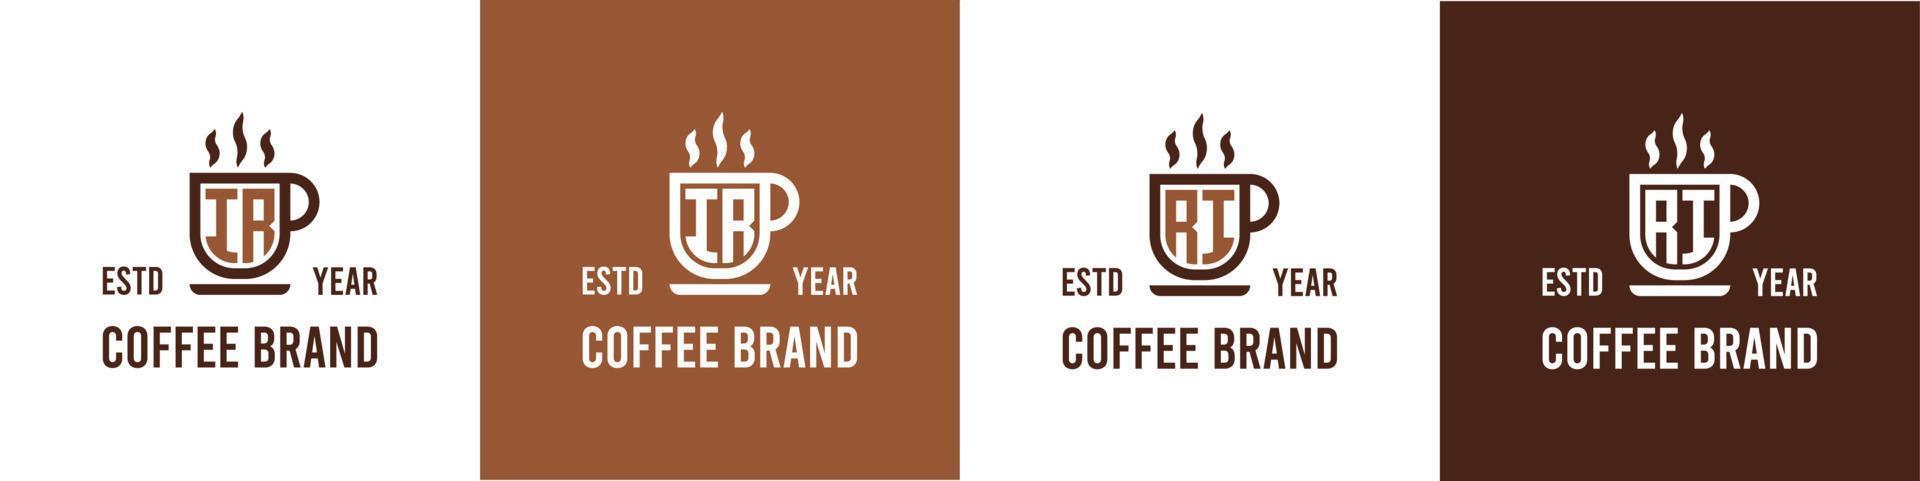 letra ir y Rhode Island café logo, adecuado para ninguna negocio relacionado a café, té, o otro con ir o Rhode Island iniciales. vector